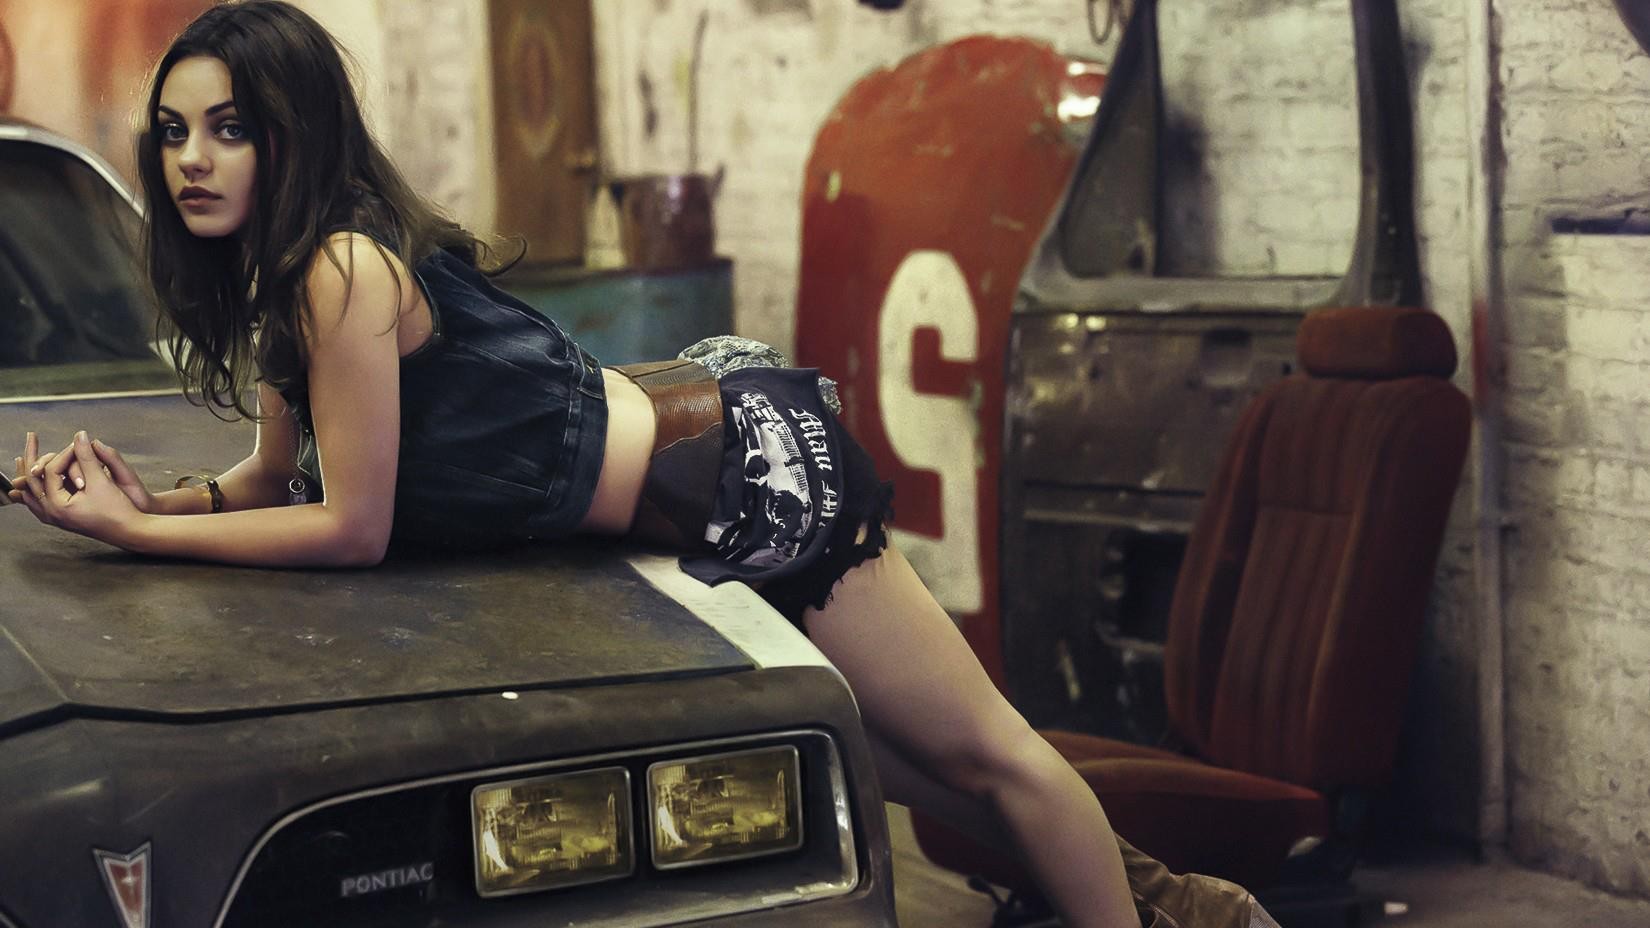 Mila Kunis Women Actress Women With Cars Brunette Garages Beige 1650x928